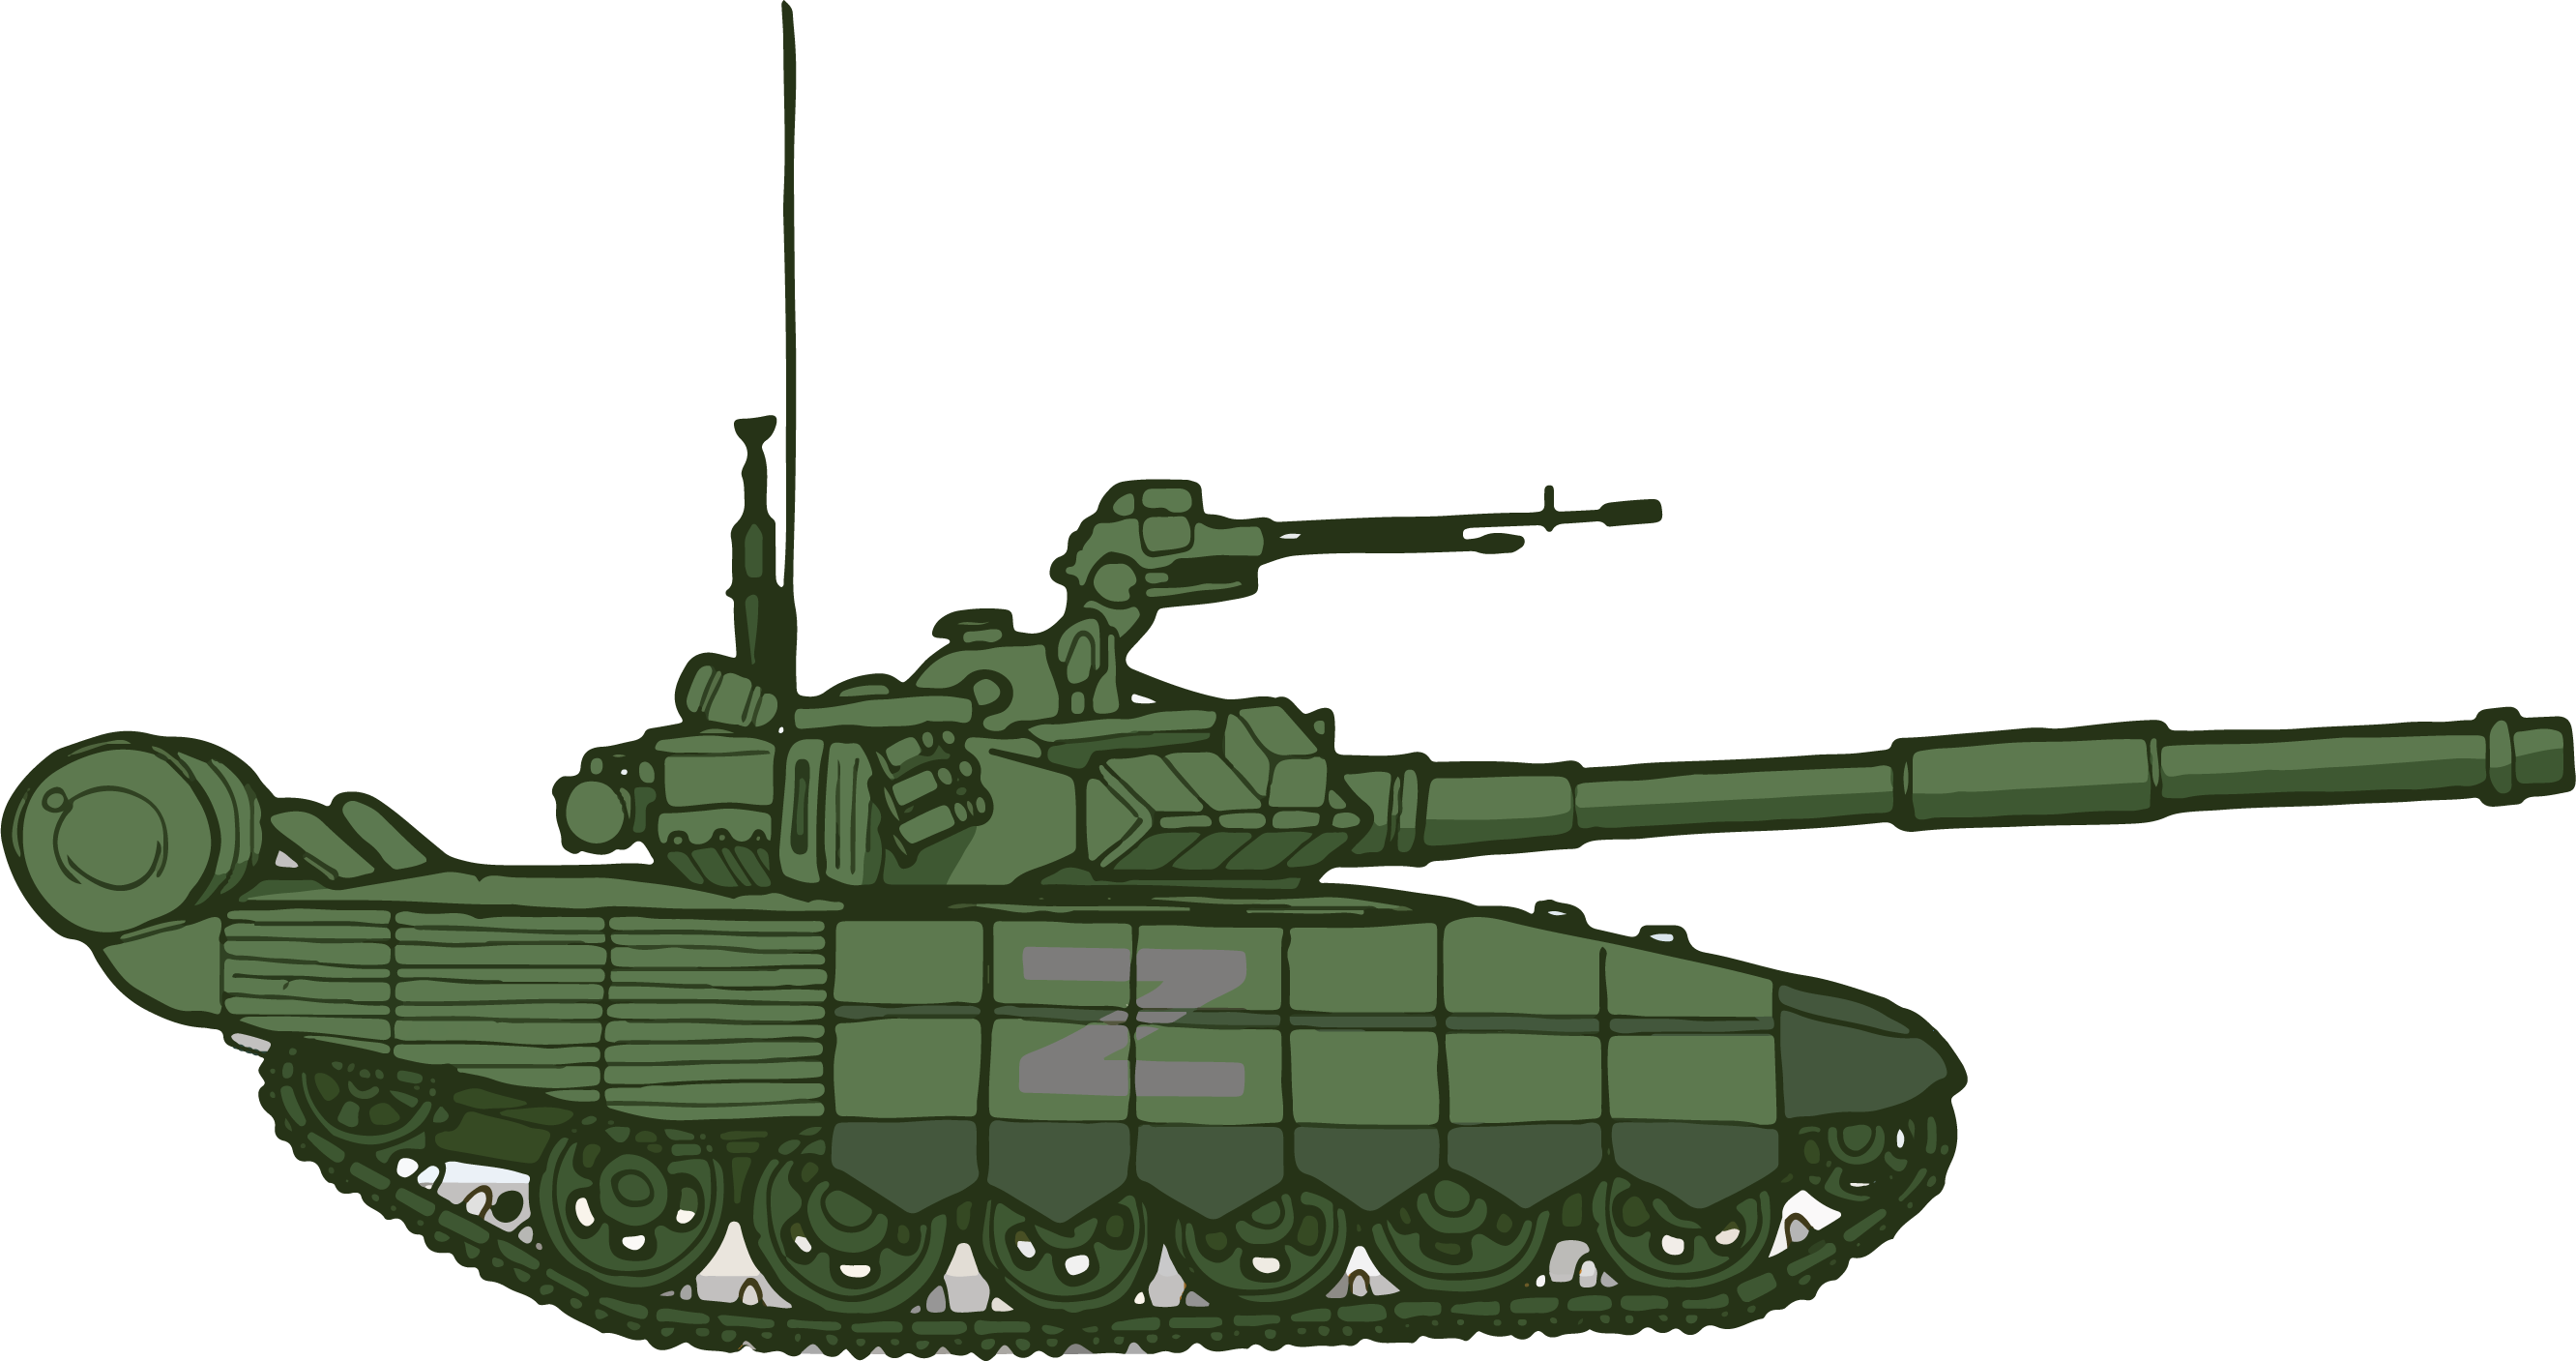 Vene tank